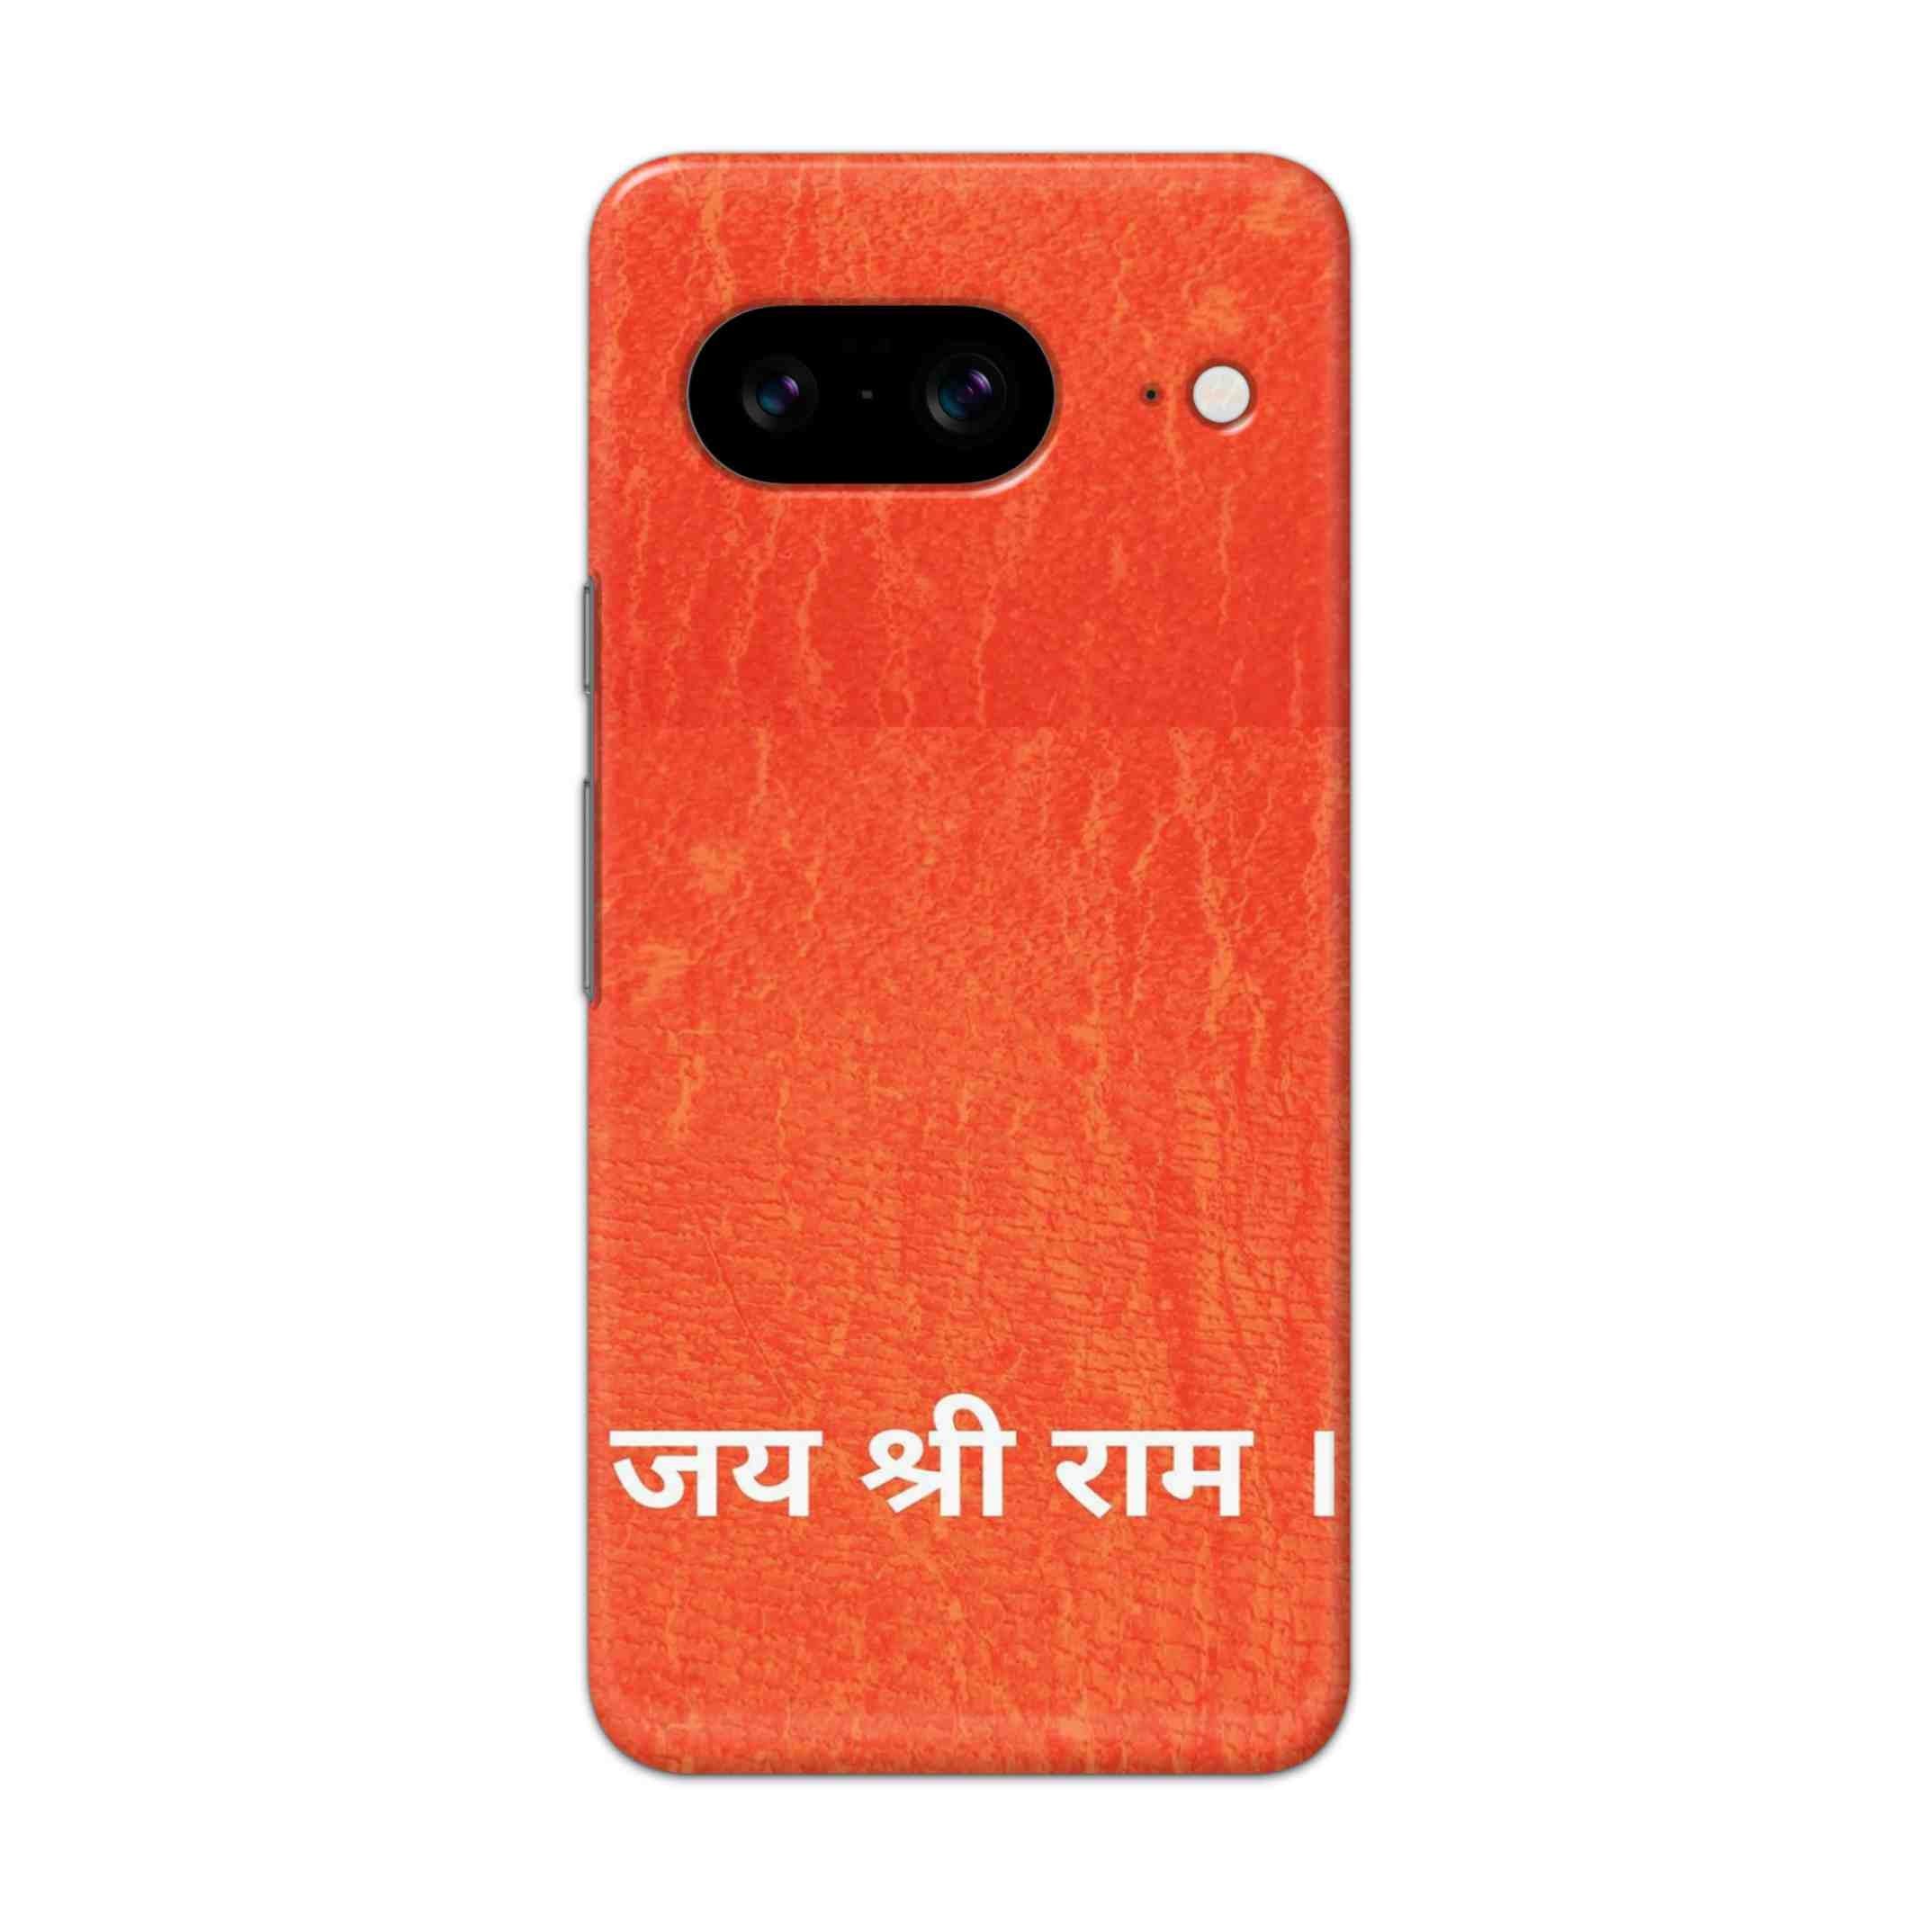 Buy Jai Shree Ram Hard Back Mobile Phone Case/Cover For Pixel 8 Online